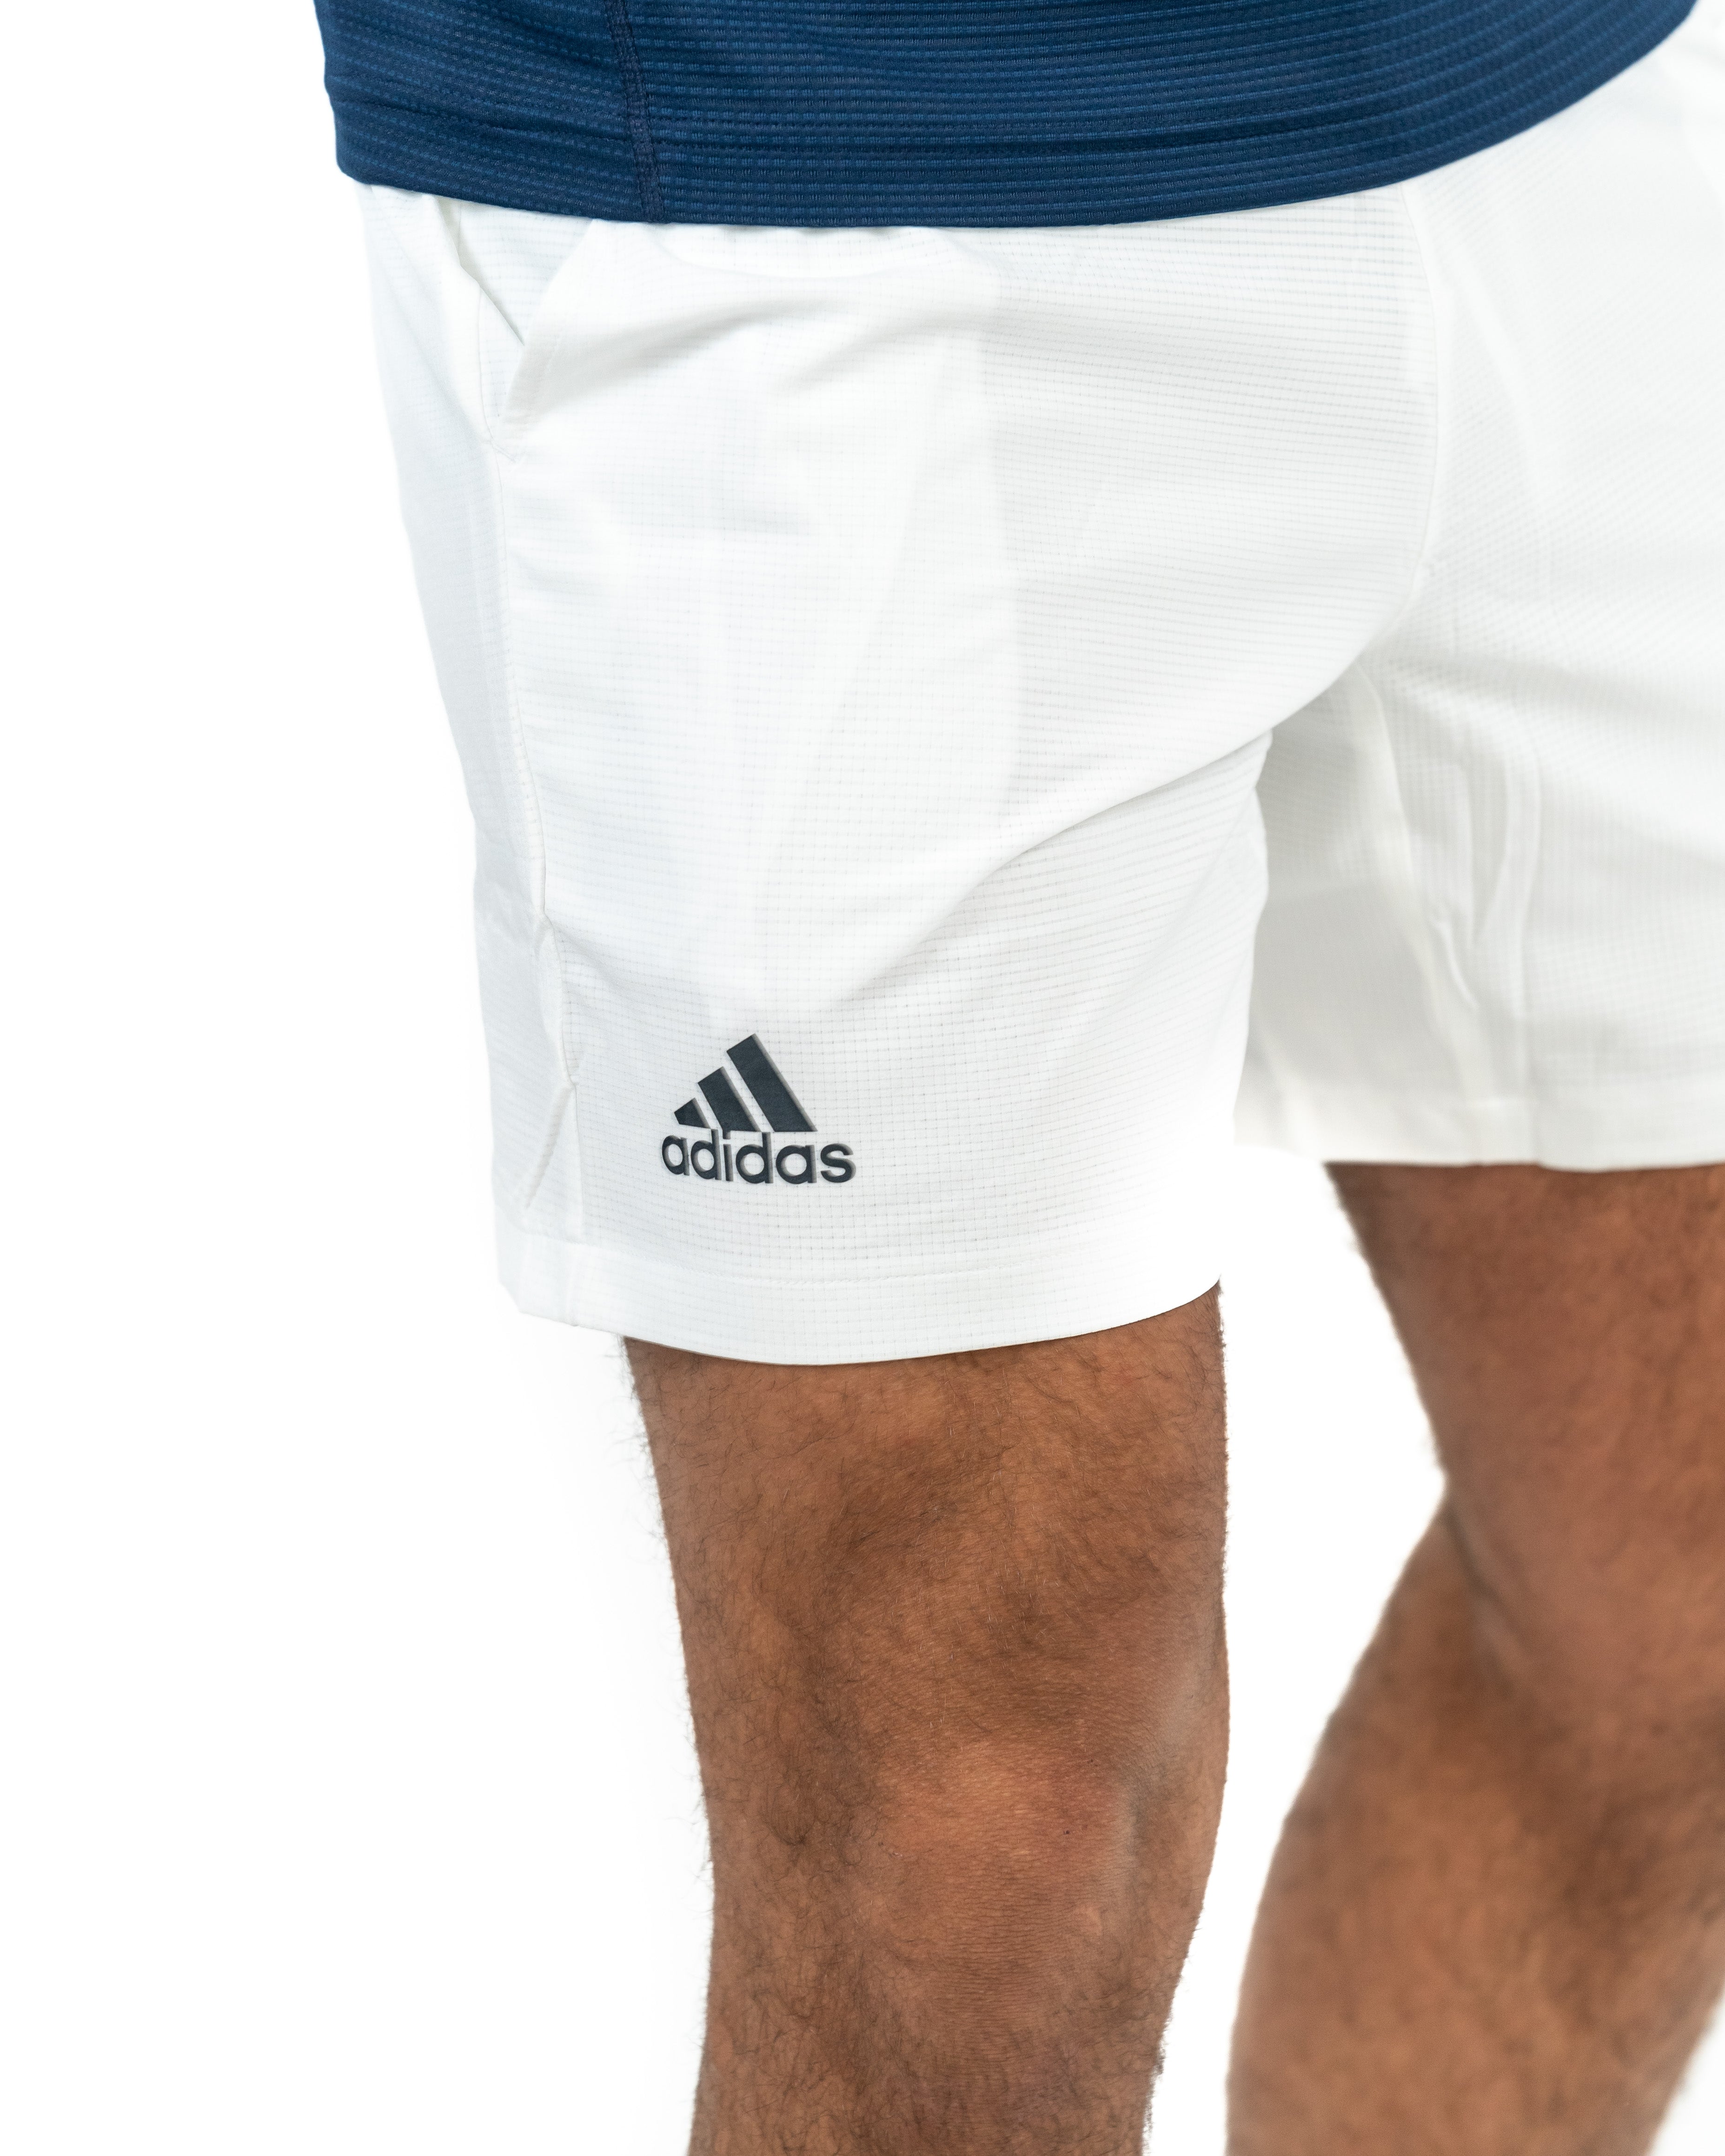 Adidas Ergo Shorts